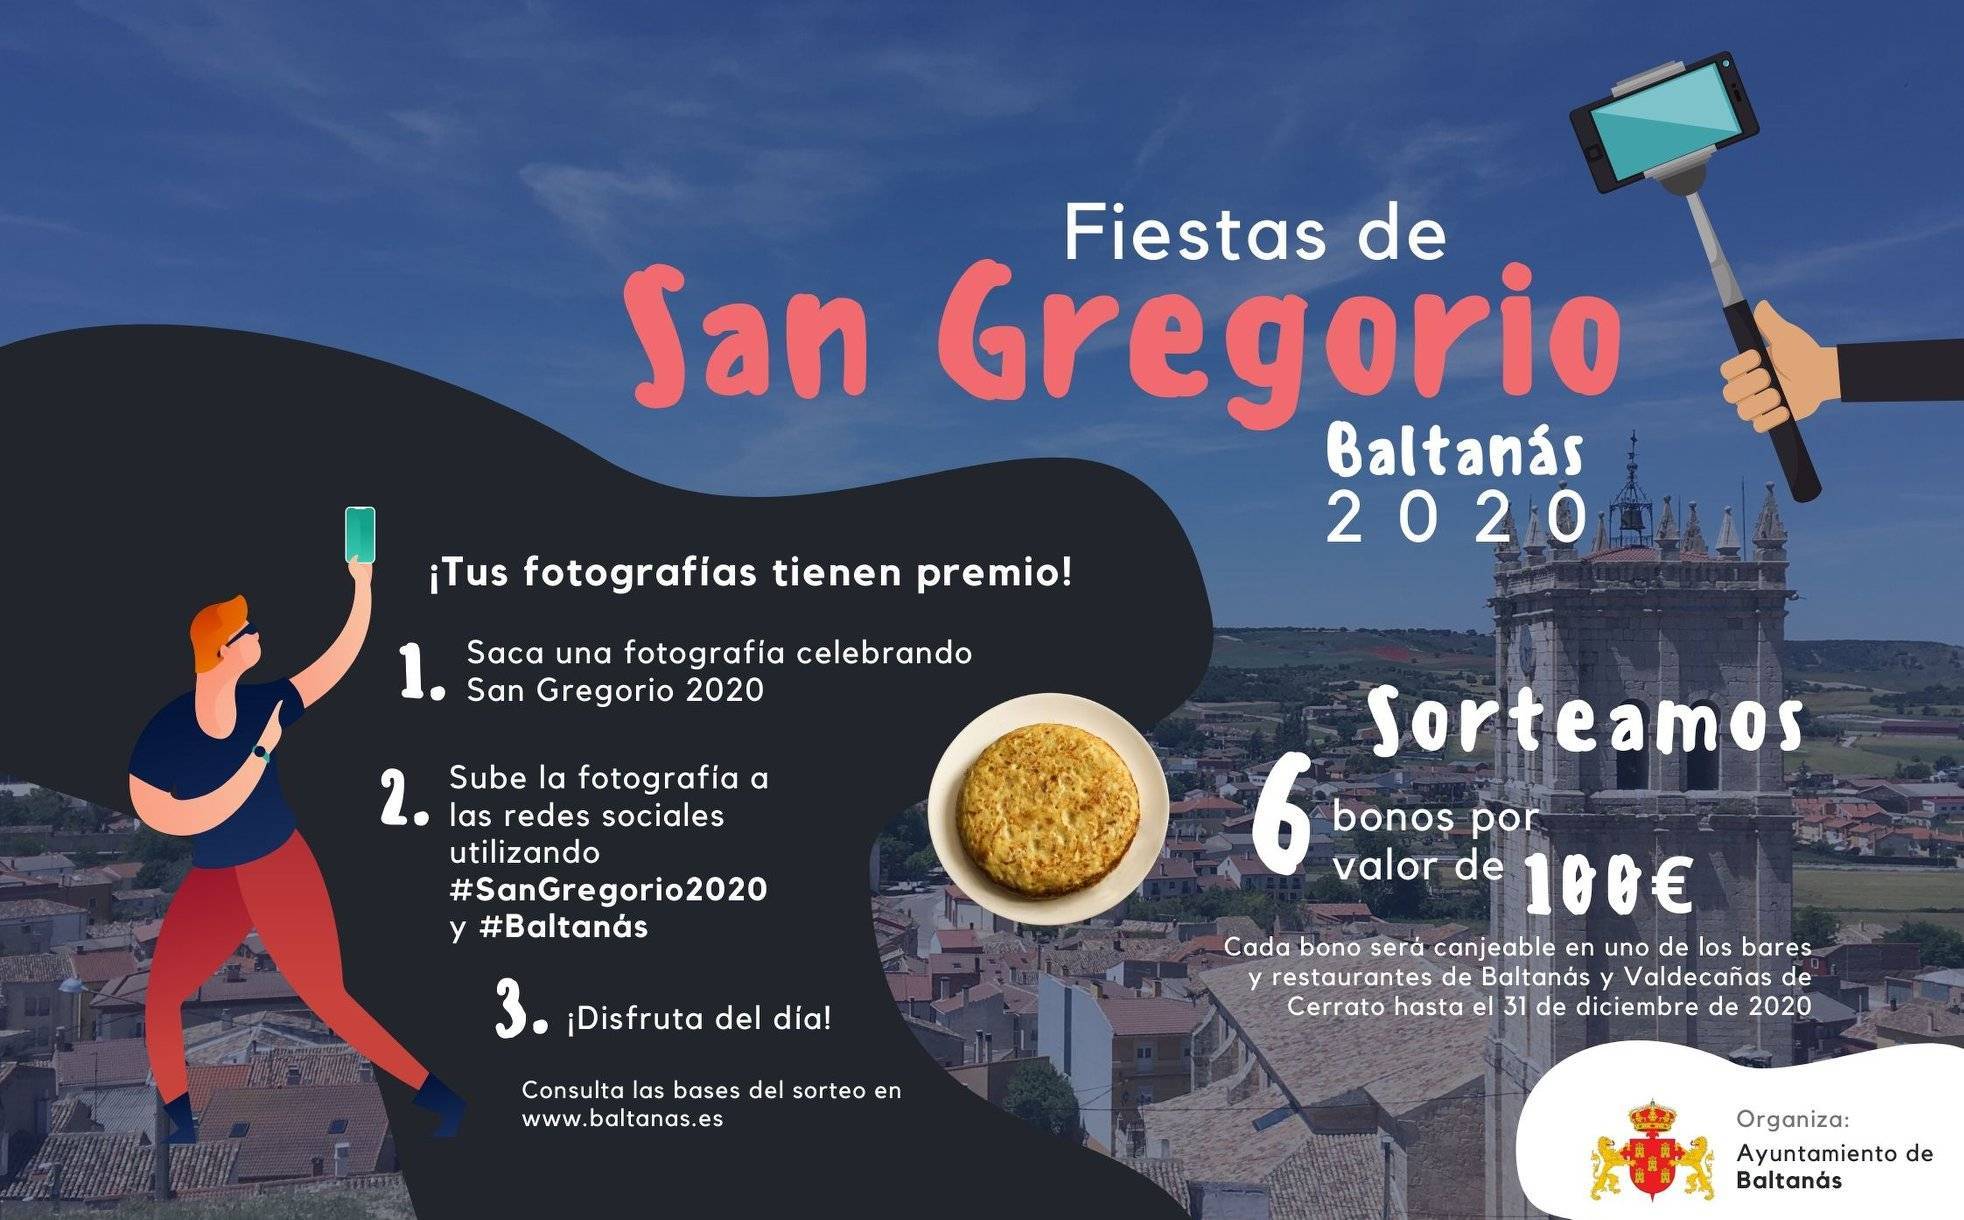 Fiestas de San Gregorio 2020 - Baltanás (Palencia)